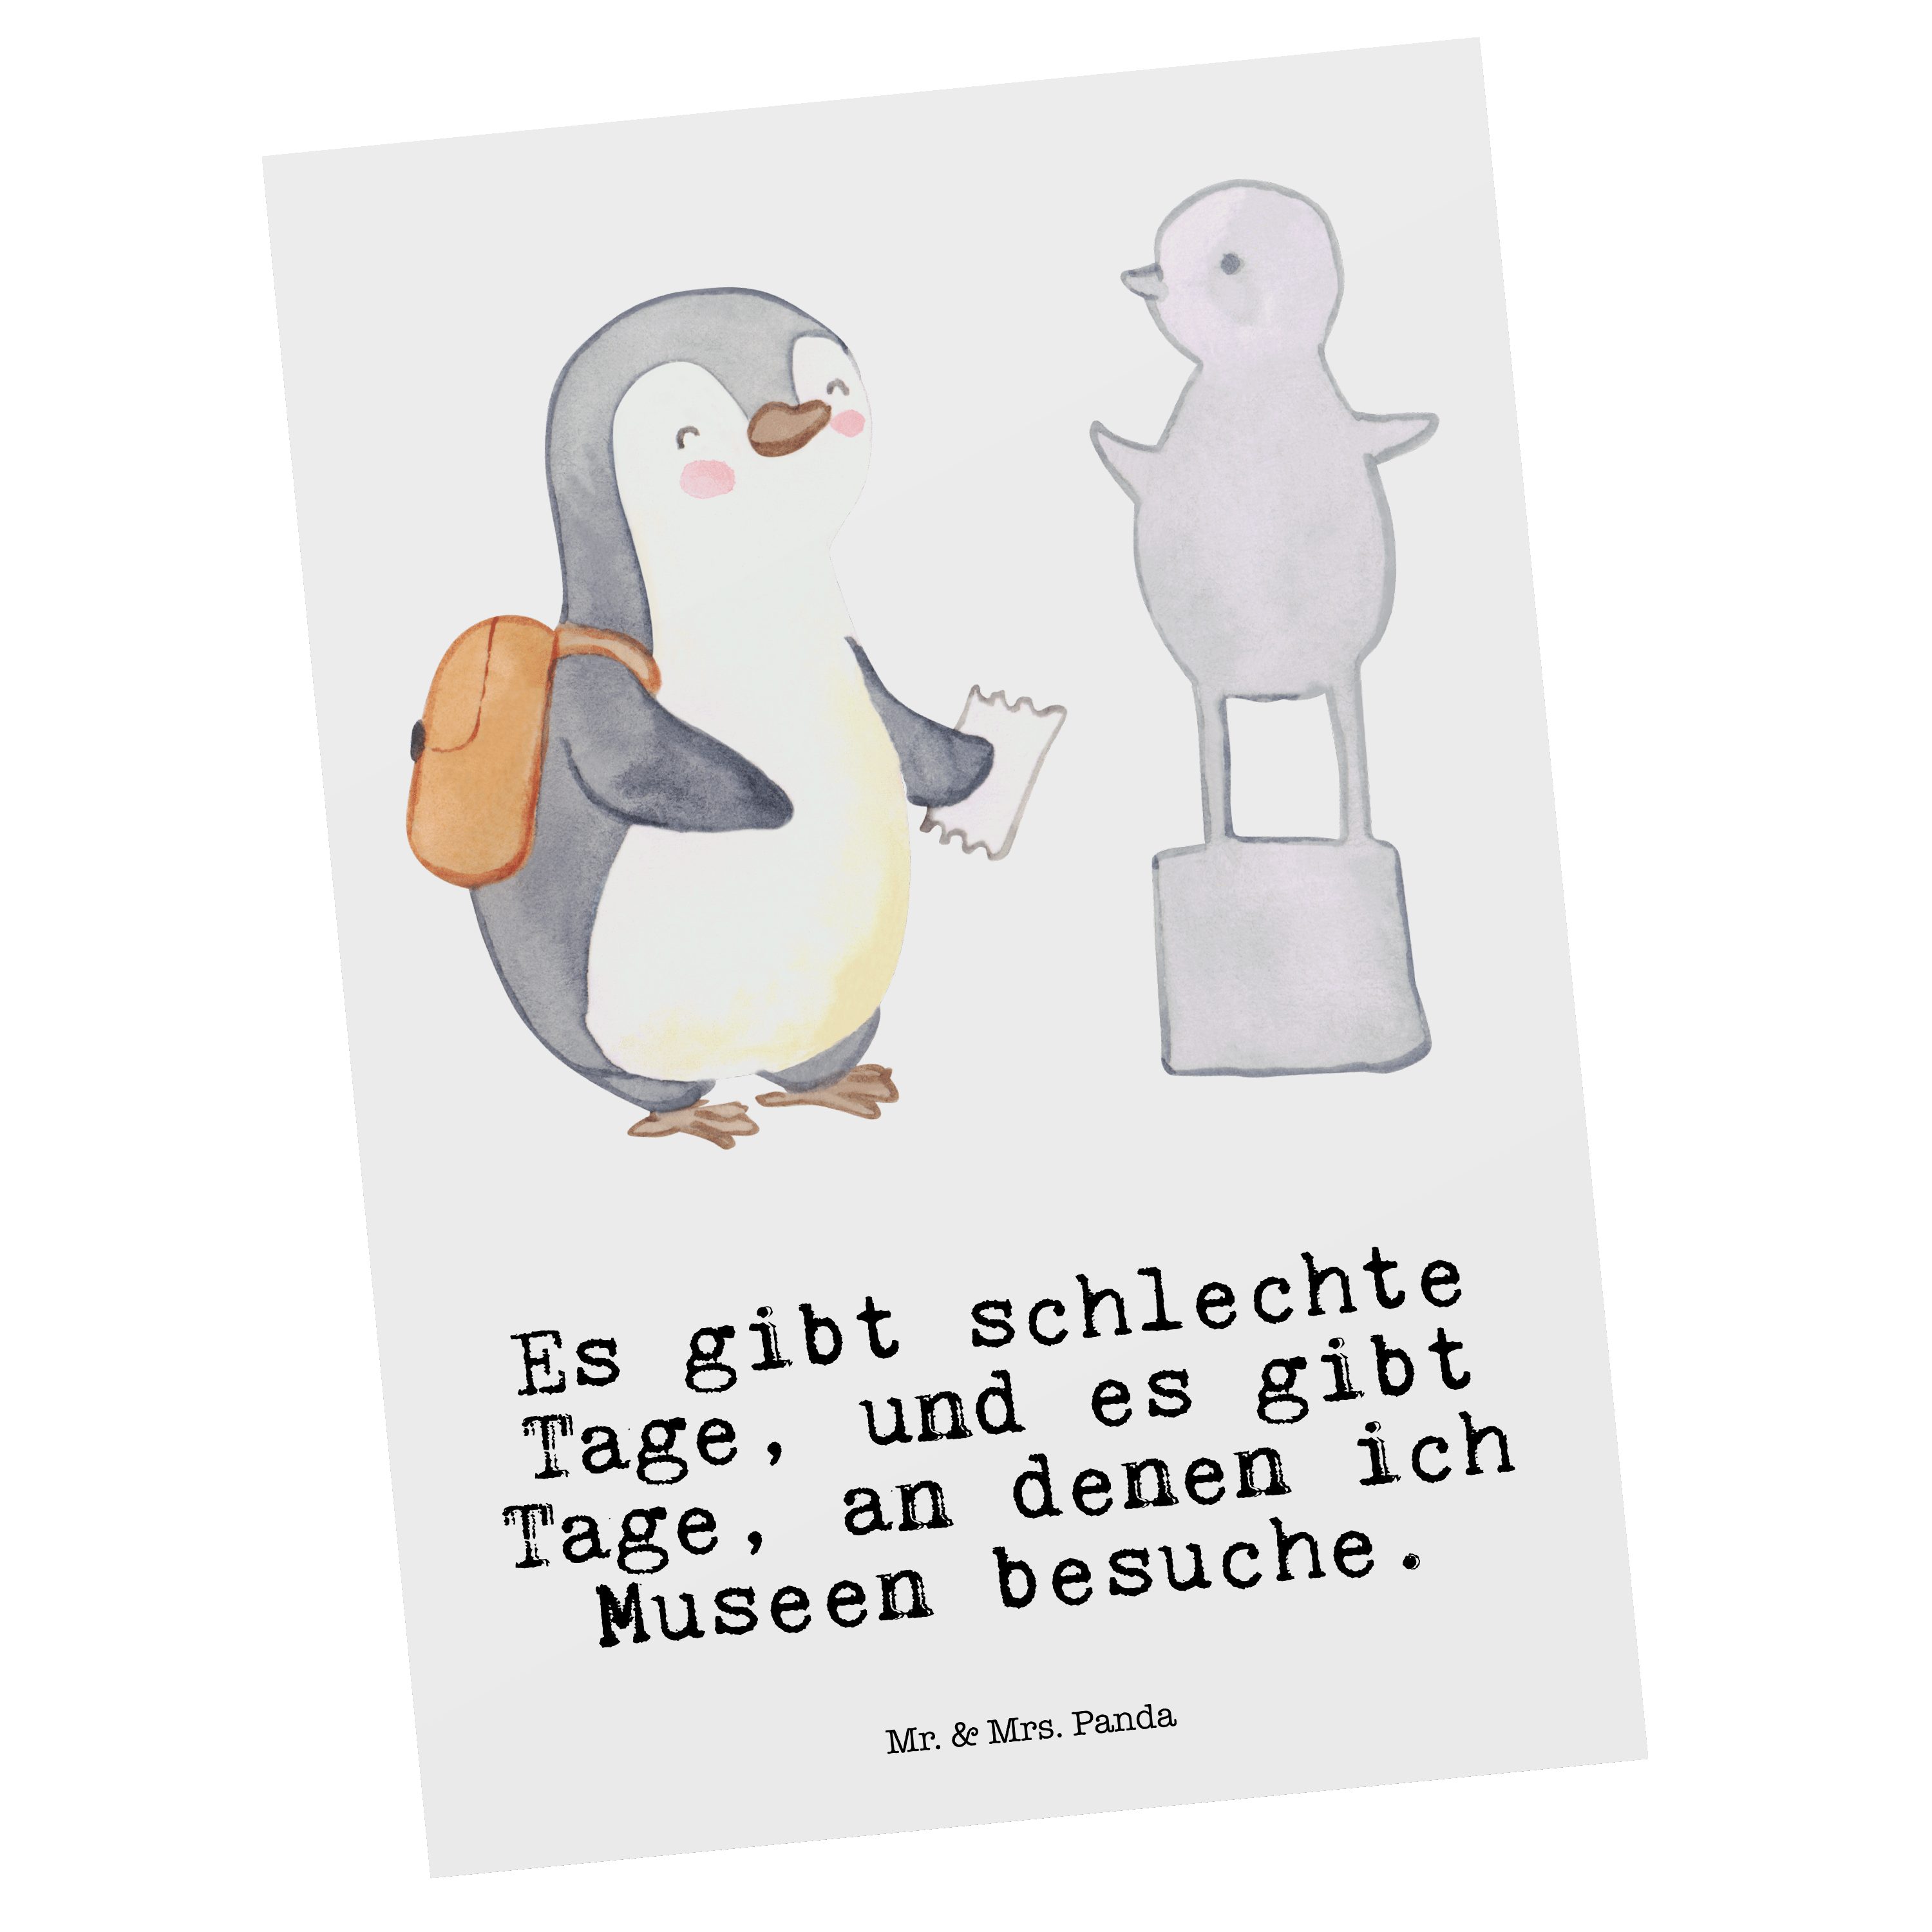 Mr. & Mrs. Panda Postkarte Pinguin Museum besuchen Tage - Weiß - Geschenk, Auszeichnung, Museen